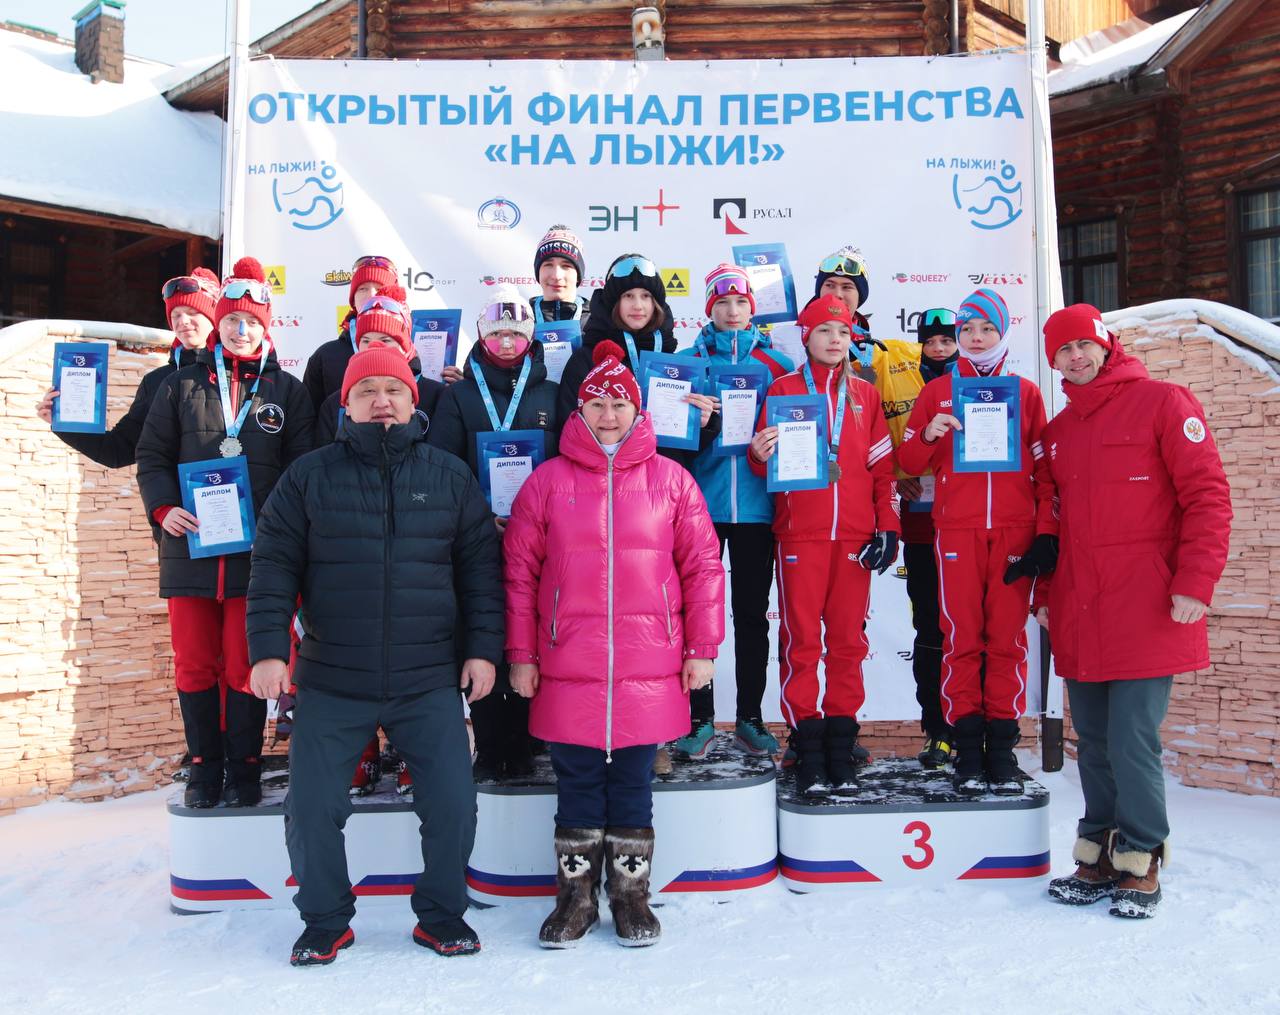 🌟🏆🎿 Наша гимназистка стала призером на межрегиональных соревнованиях по лыжам! 🏆🎉